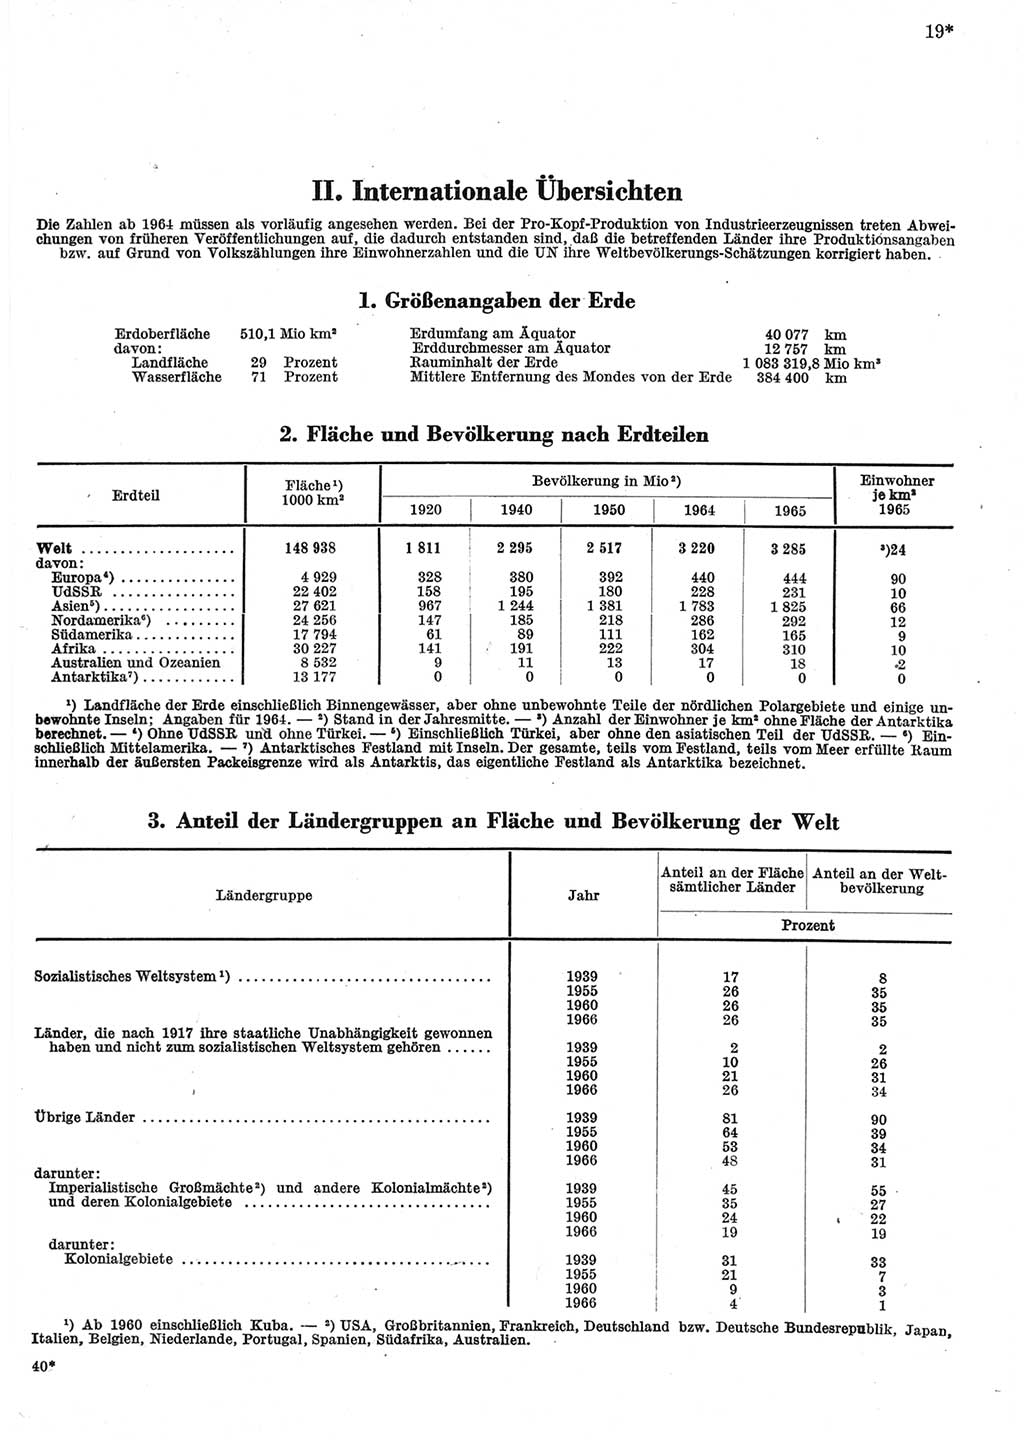 Statistisches Jahrbuch der Deutschen Demokratischen Republik (DDR) 1967, Seite 19 (Stat. Jb. DDR 1967, S. 19)